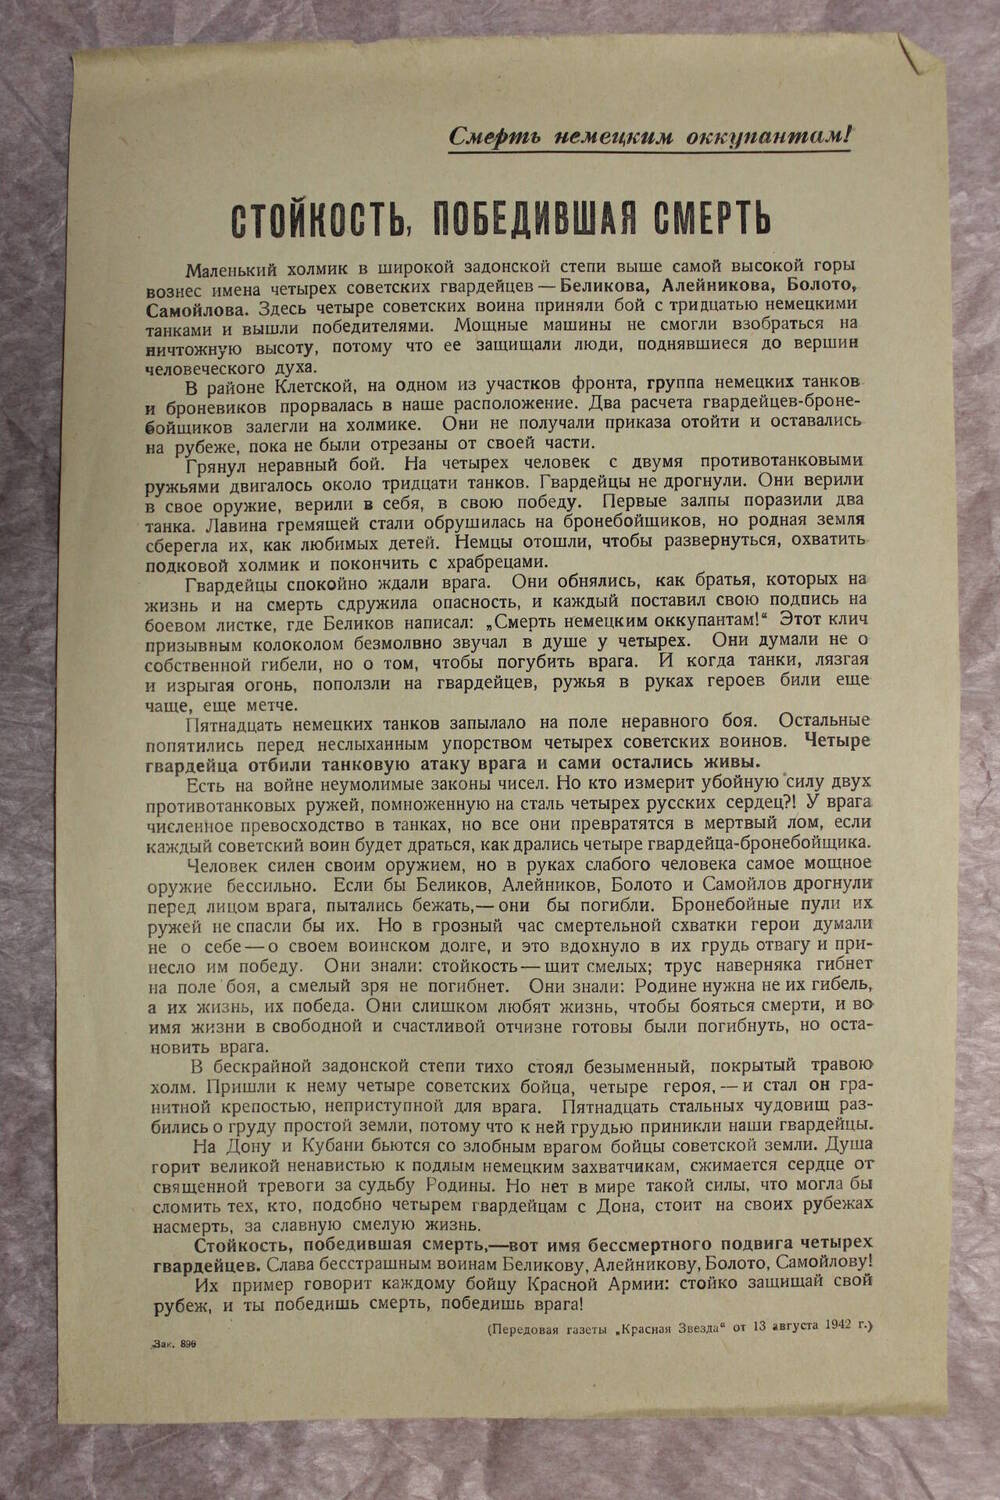 Листовка Стойкость победившая смерть август 1942 г. (передовая газета Красная Звезда 13 августа 1942 г)